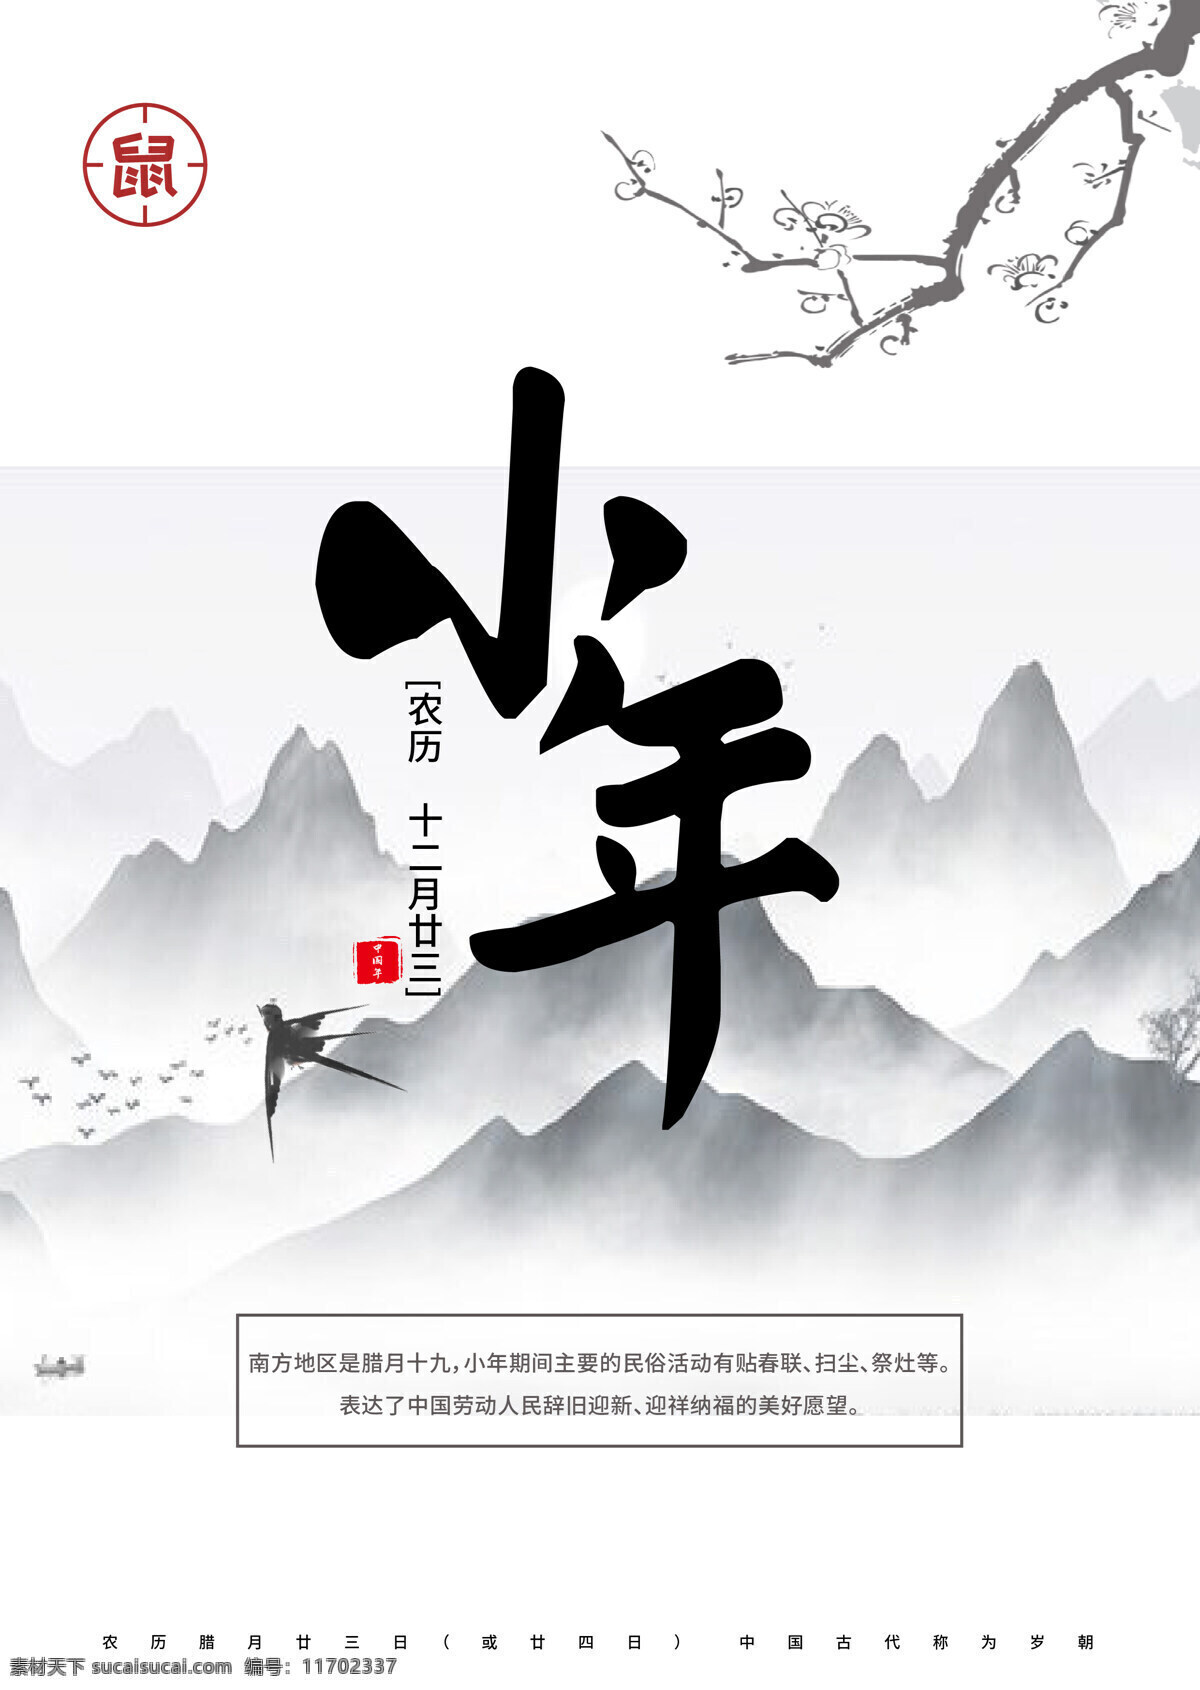 小年海报 小年 新年 简约 中国风 淡雅 文化艺术 节日庆祝